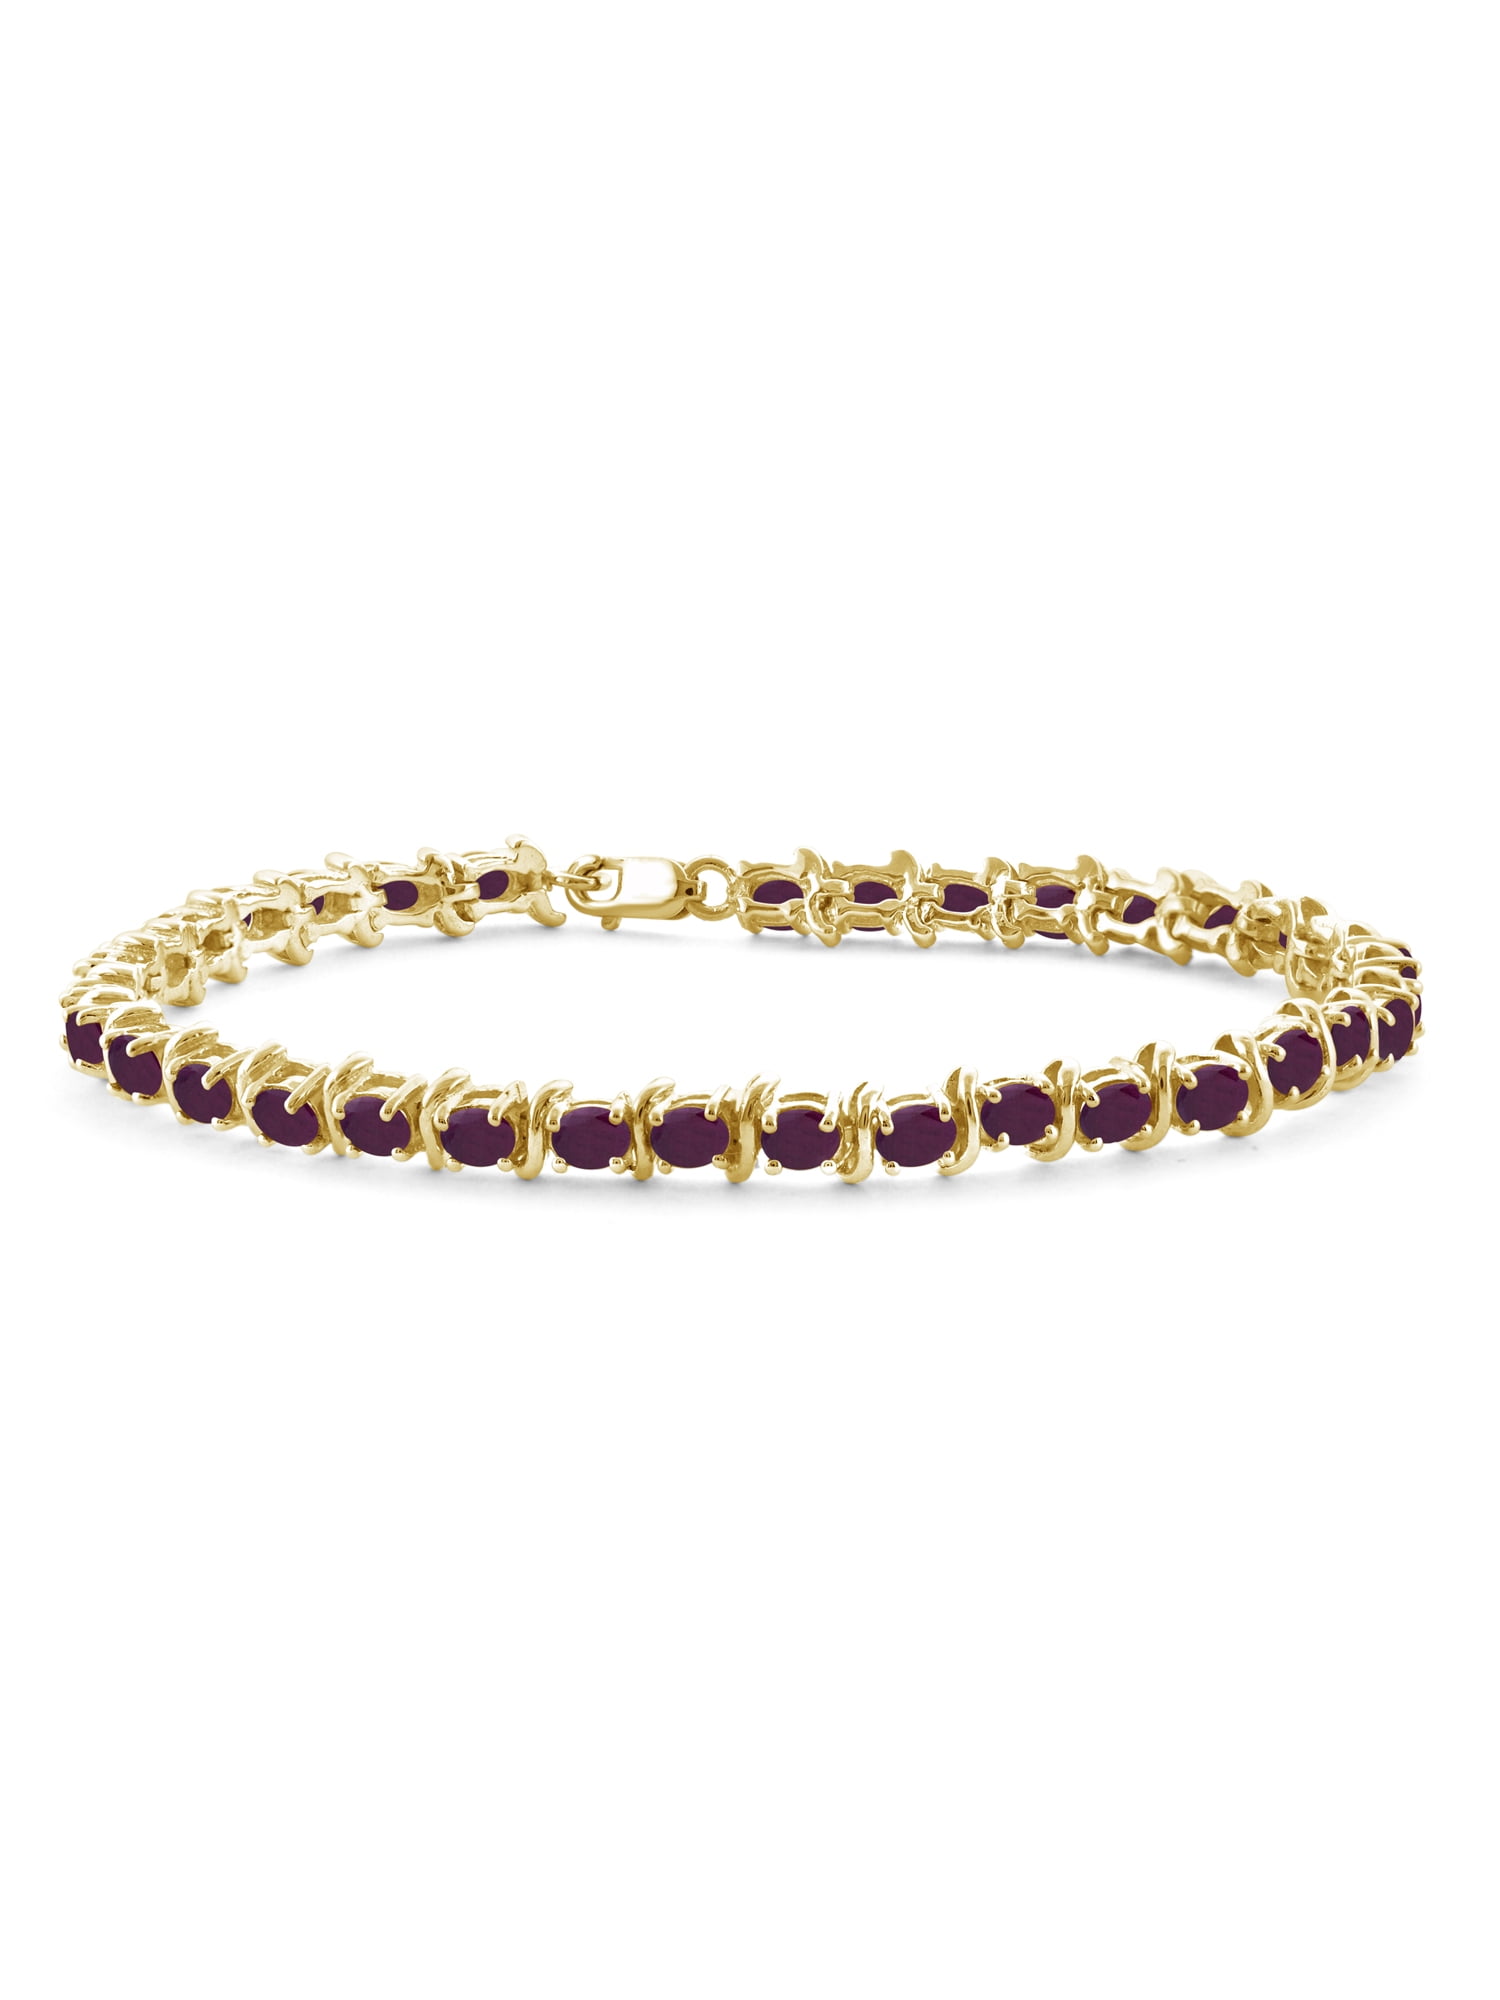 Natural Ruby Bracelet 18K White Gold and Diamonds Oval Shape Ruby | eBay